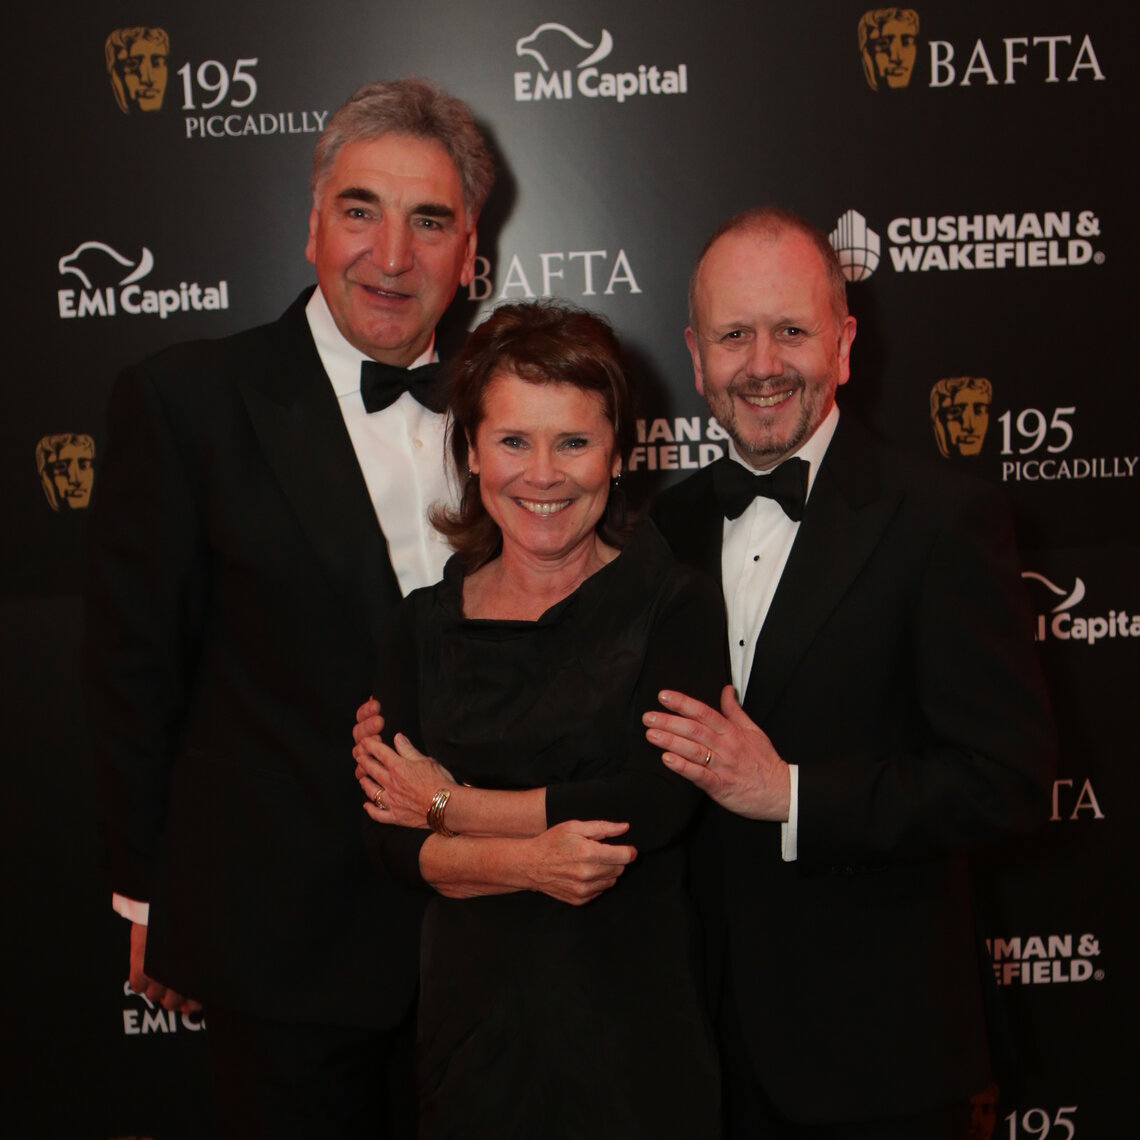 BAFTA's Glittering Film Gala Supporting New Talent | BAFTA